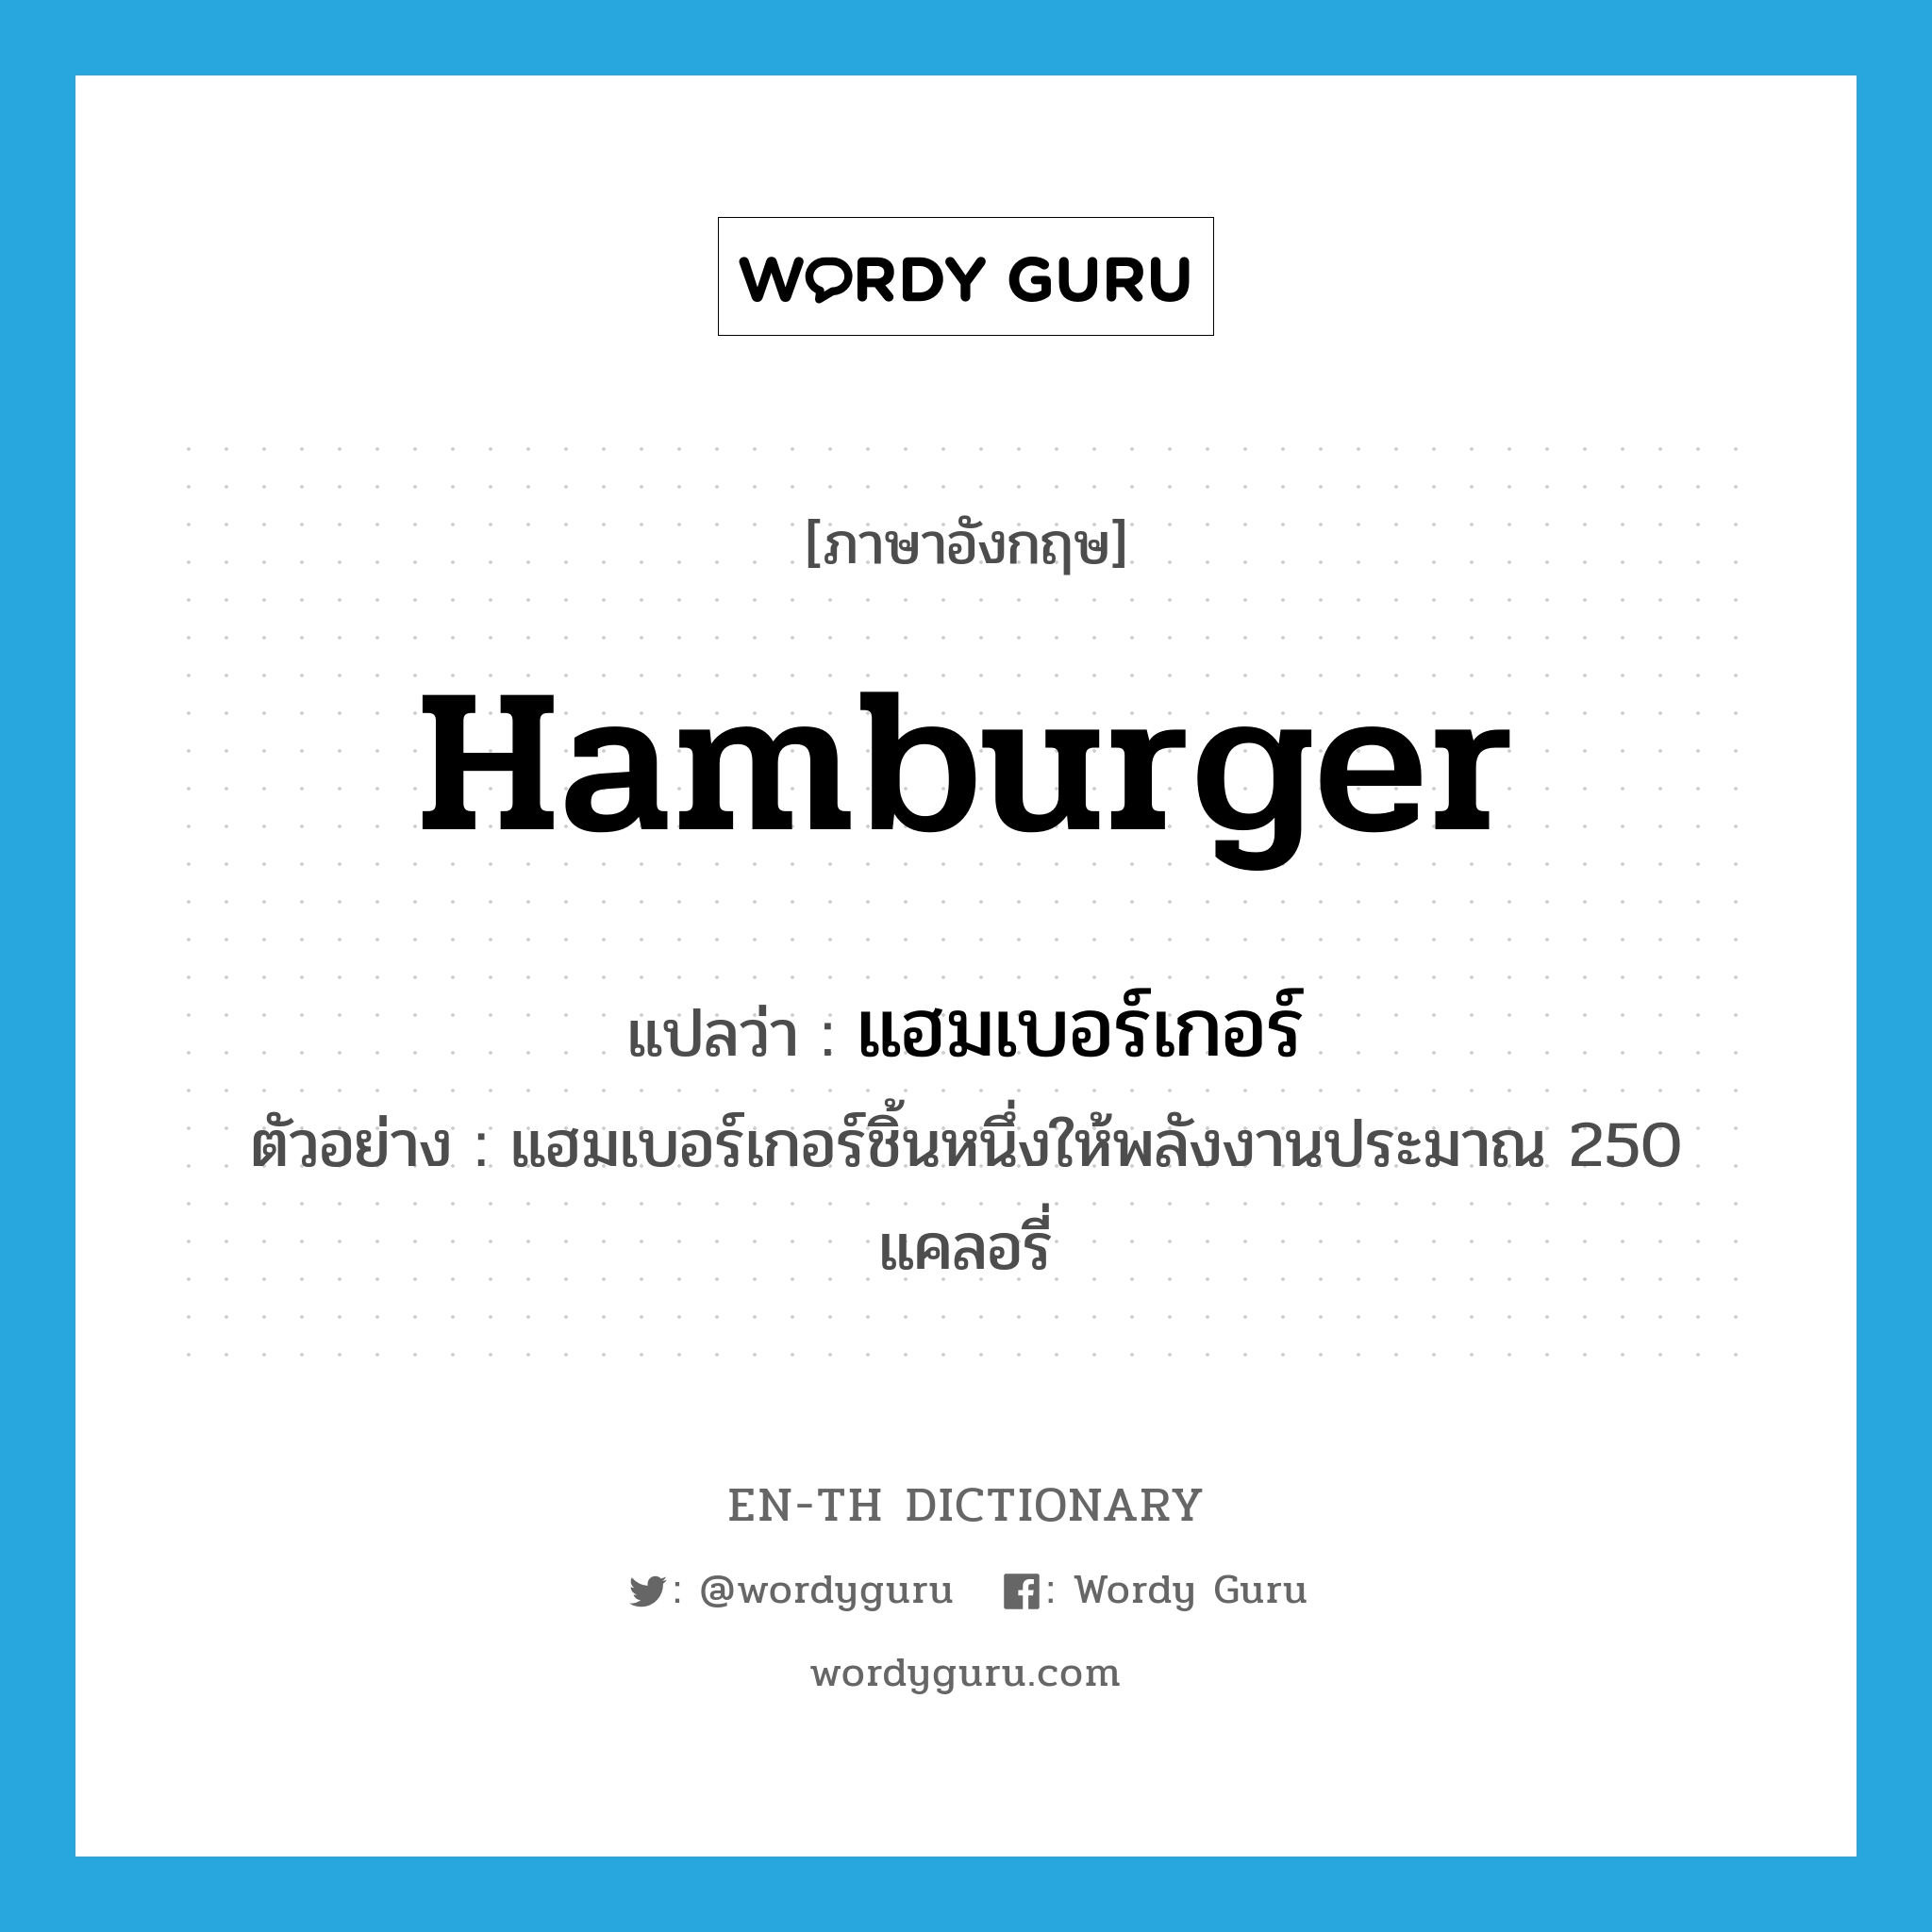 แฮมเบอร์เกอร์ ภาษาอังกฤษ?, คำศัพท์ภาษาอังกฤษ แฮมเบอร์เกอร์ แปลว่า hamburger ประเภท N ตัวอย่าง แฮมเบอร์เกอร์ชิ้นหนึ่งให้พลังงานประมาณ 250 แคลอรี่ หมวด N